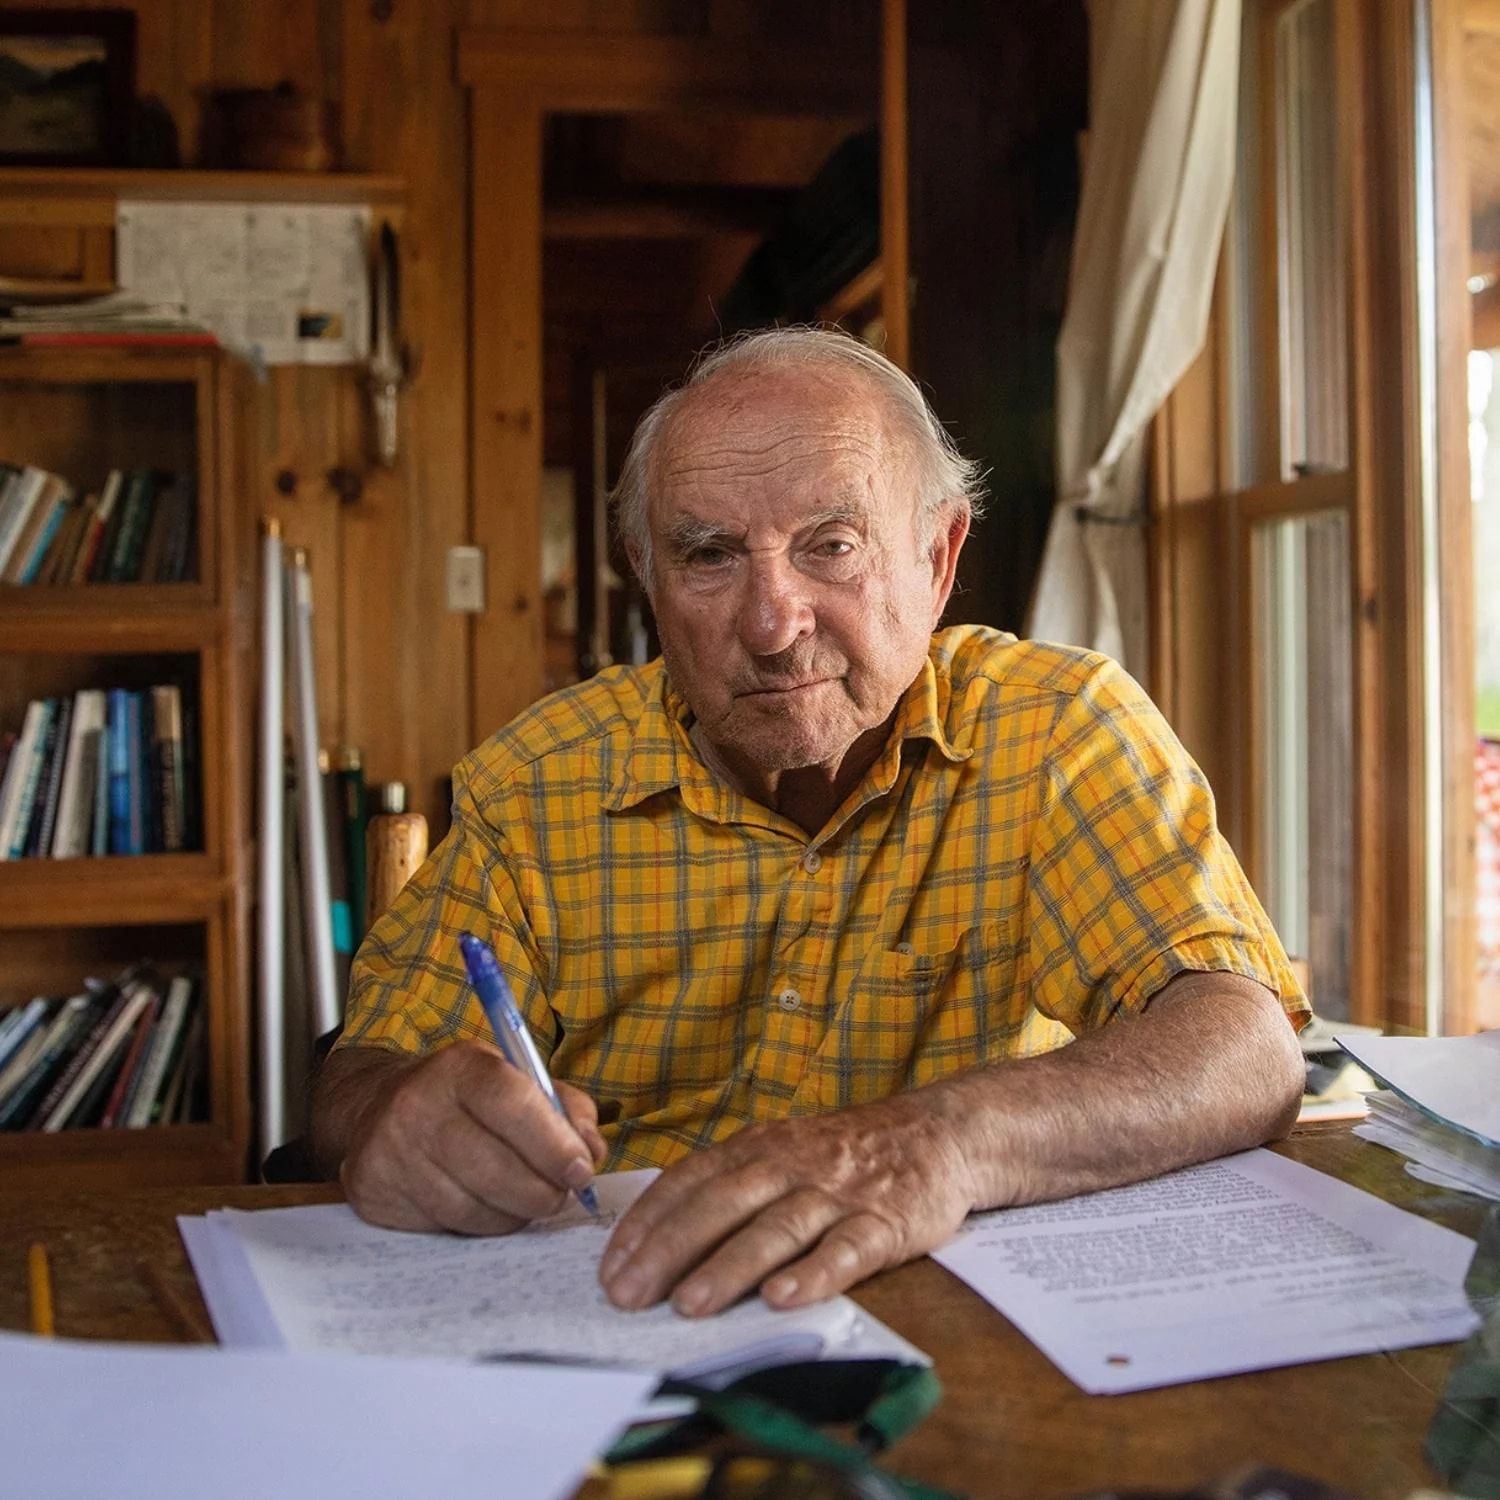 Patagonia 创始人 Yvon Chouinard 宣布放弃公司所有权并将利润用于环保事业